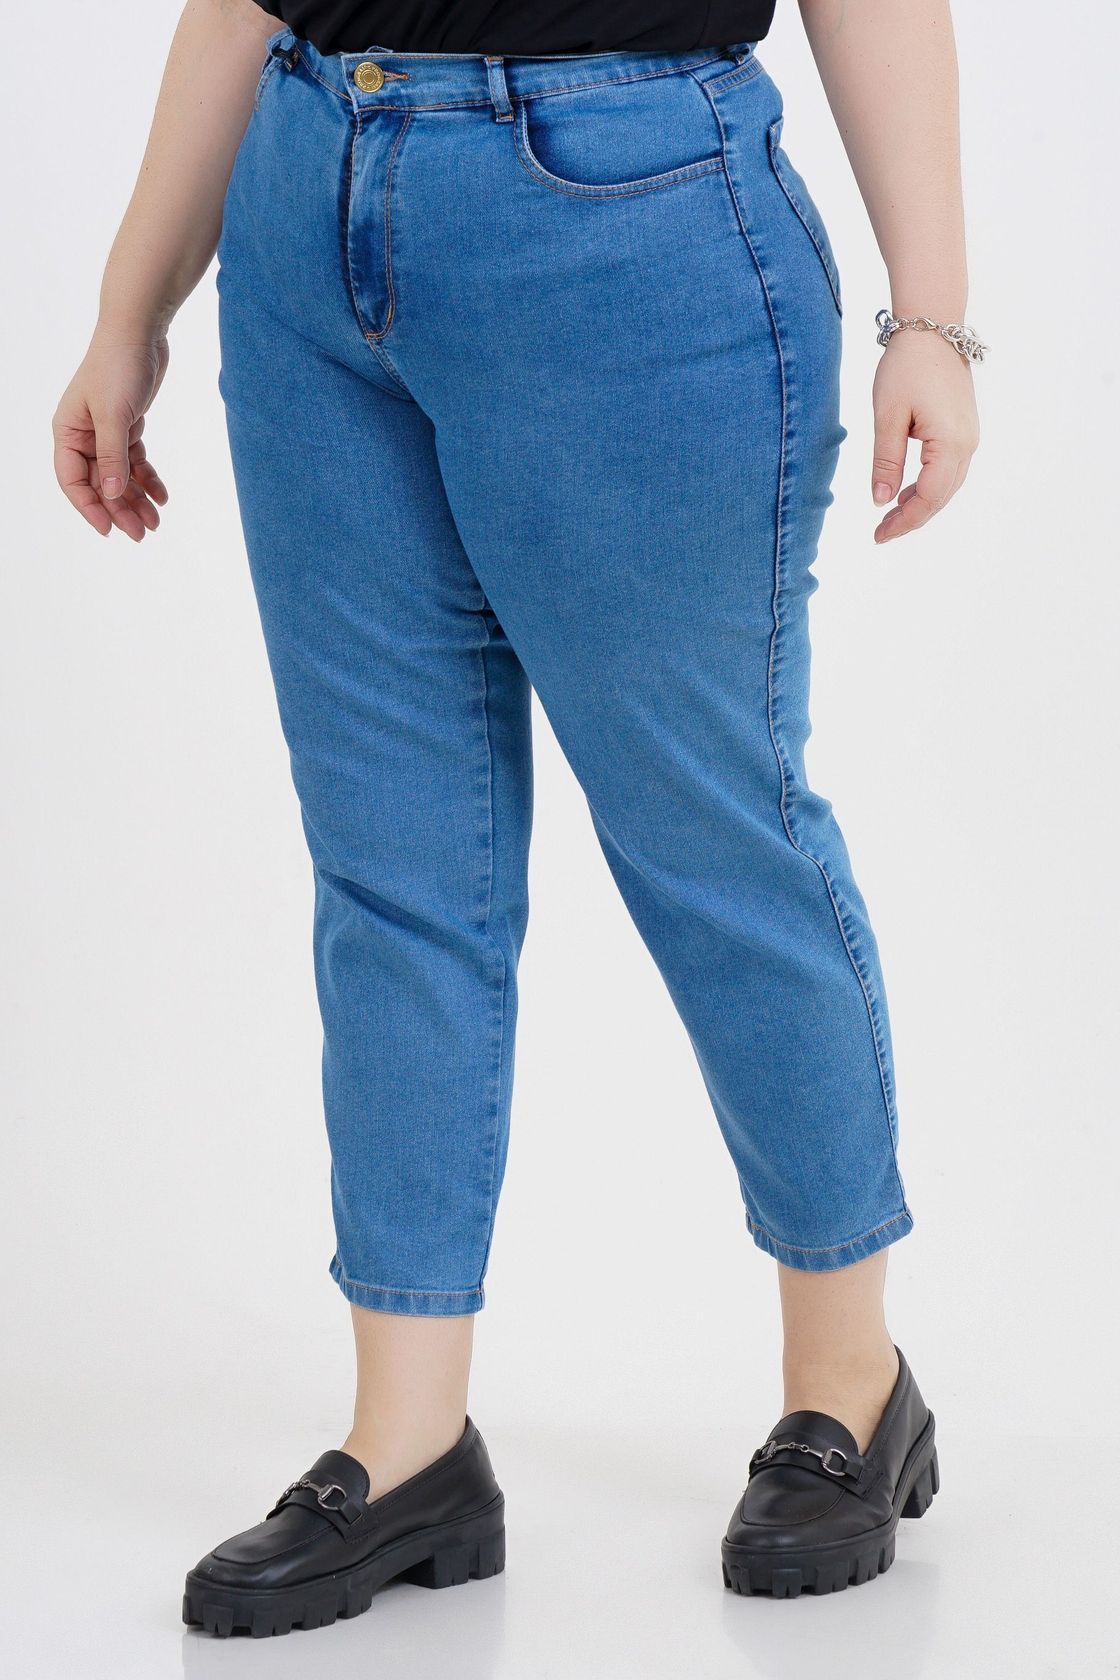 MOM Jeans - O que é e como usar?